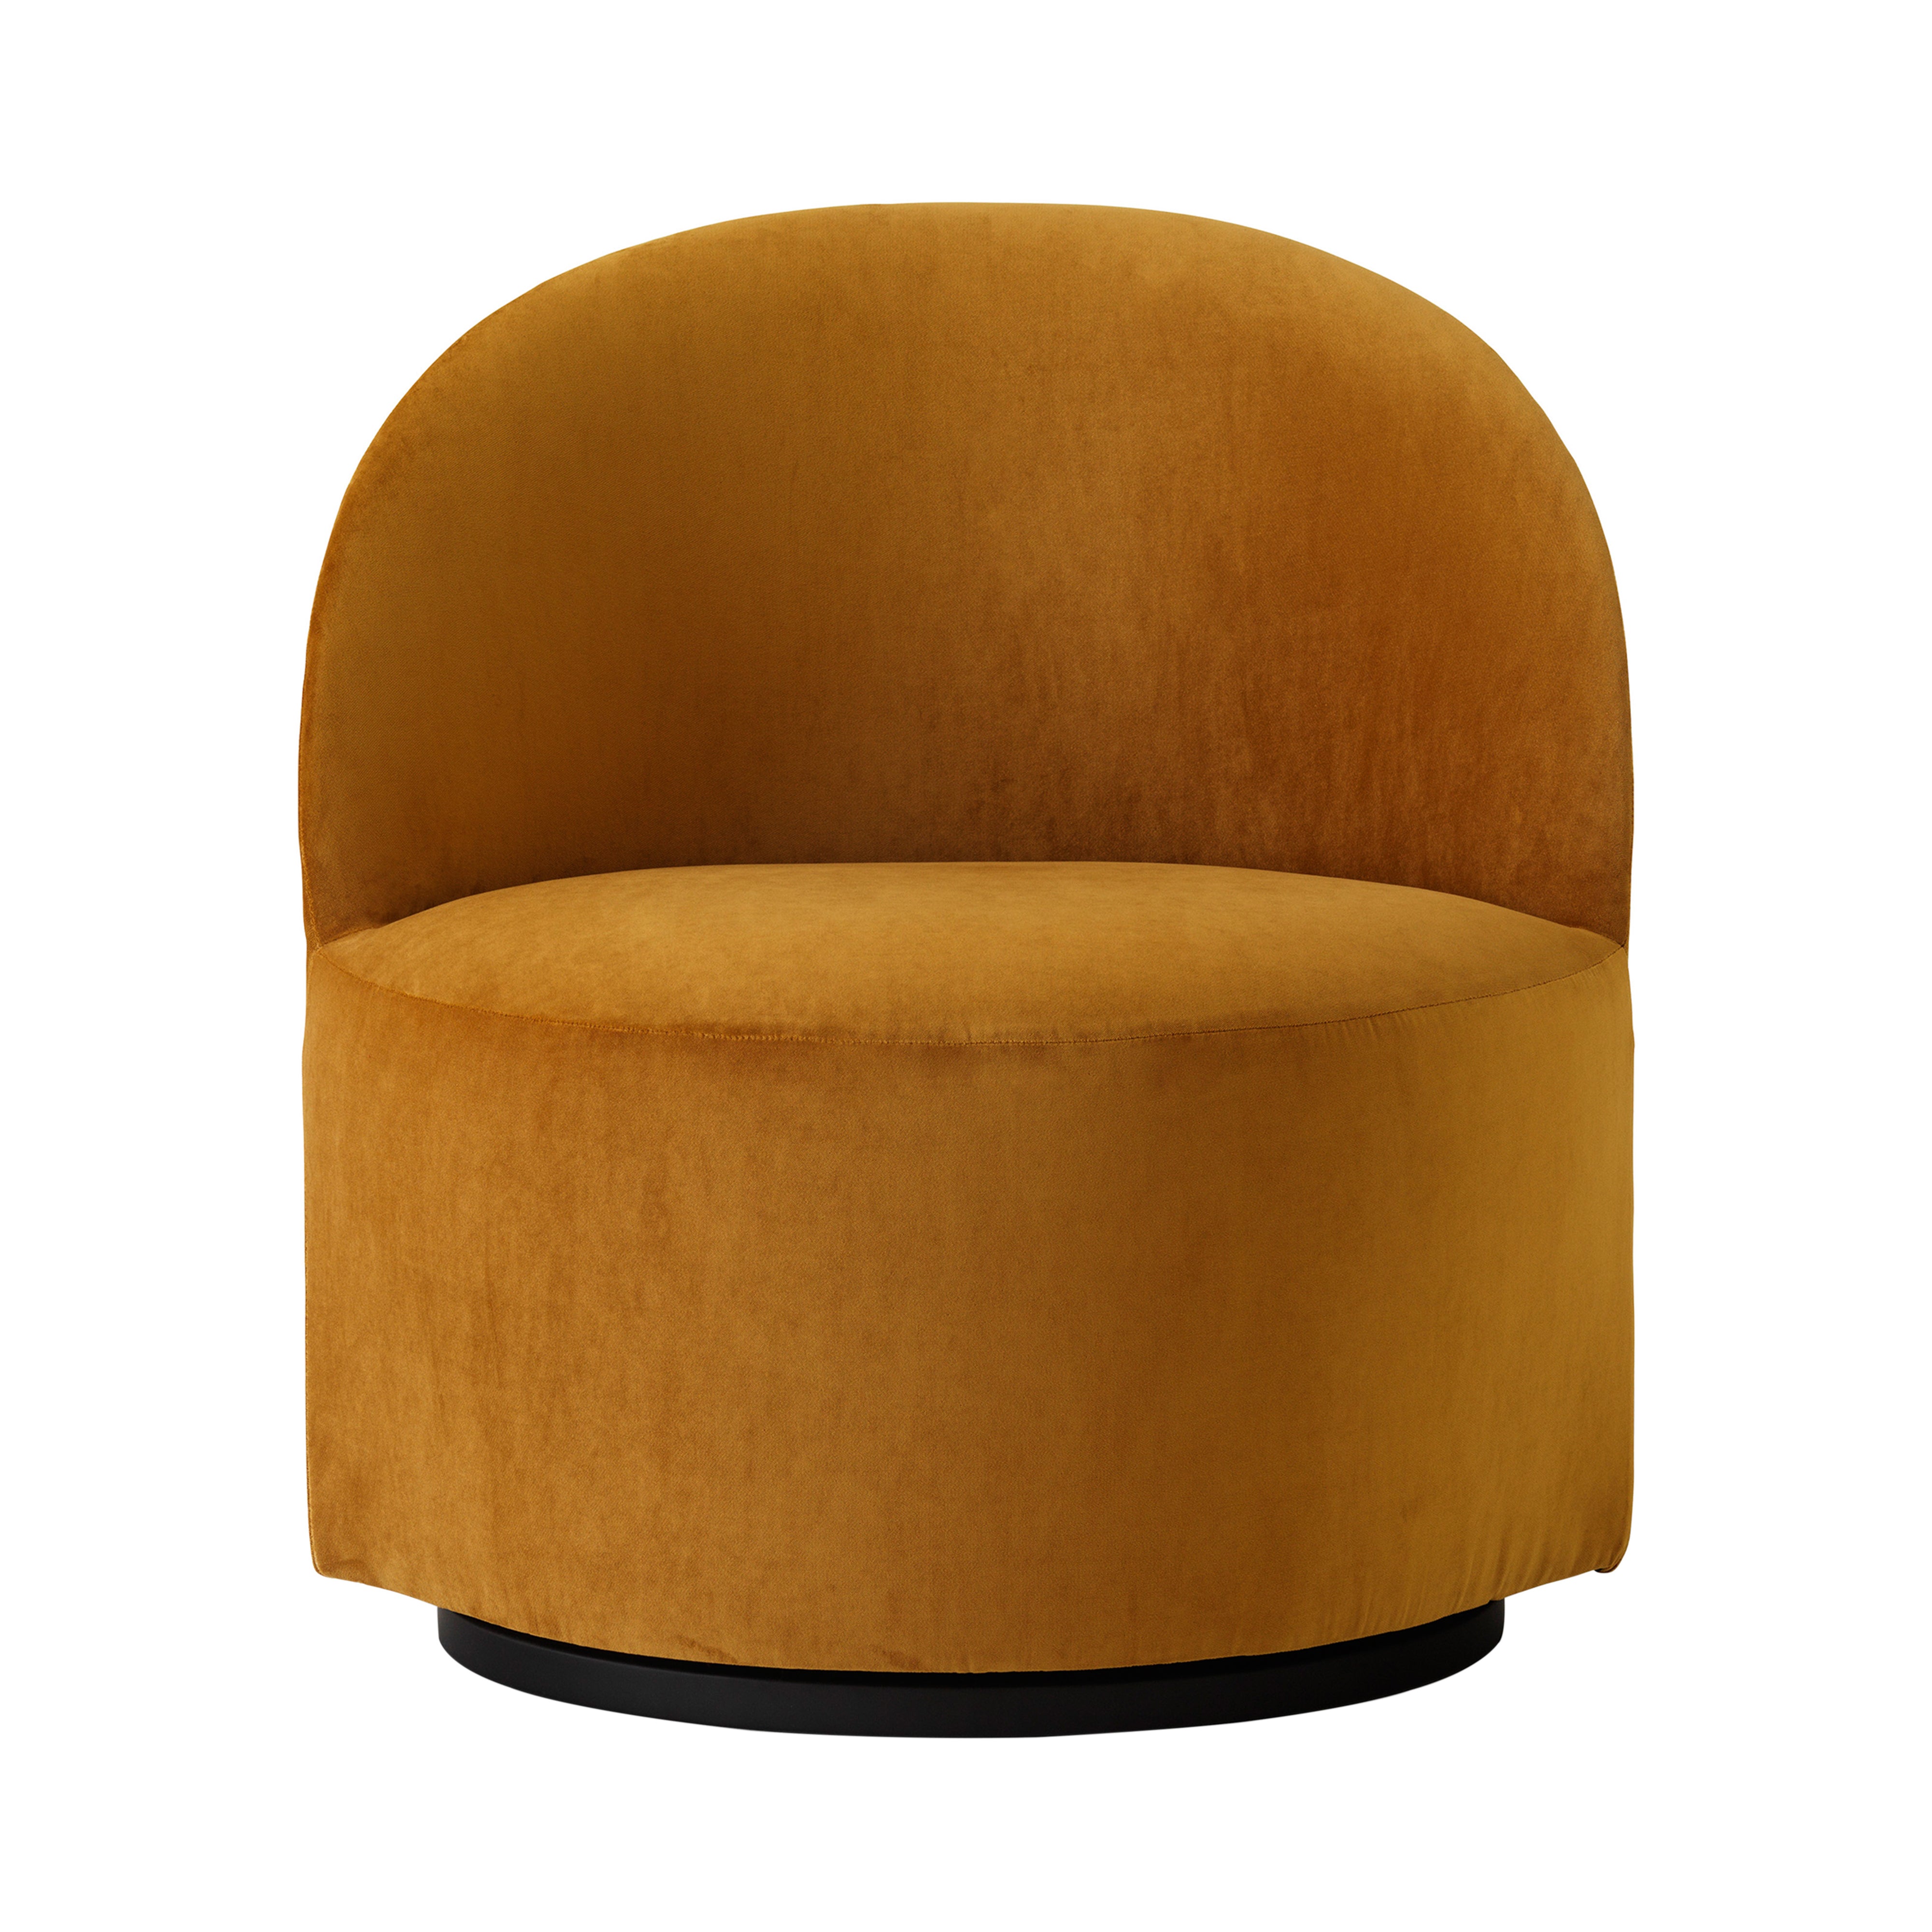 Tearoom Lounge Swivel Chair with Return: Champion 041